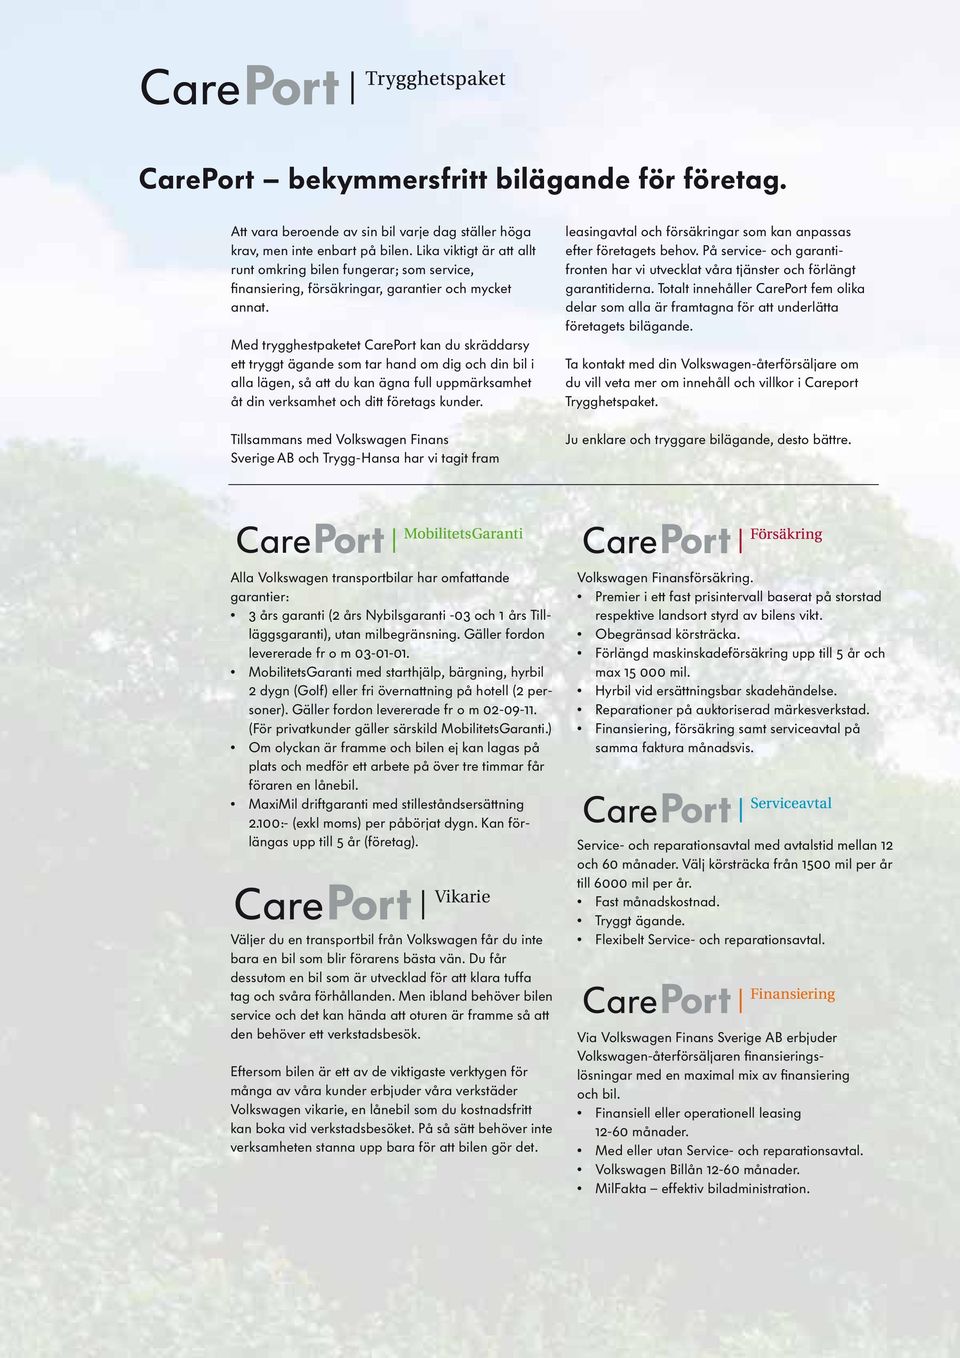 Med trygghestpaketet CarePort kan du skräddarsy ett tryggt ägande som tar hand om dig och din bil i alla lägen, så att du kan ägna full uppmärksamhet åt din verksamhet och ditt företags kunder.